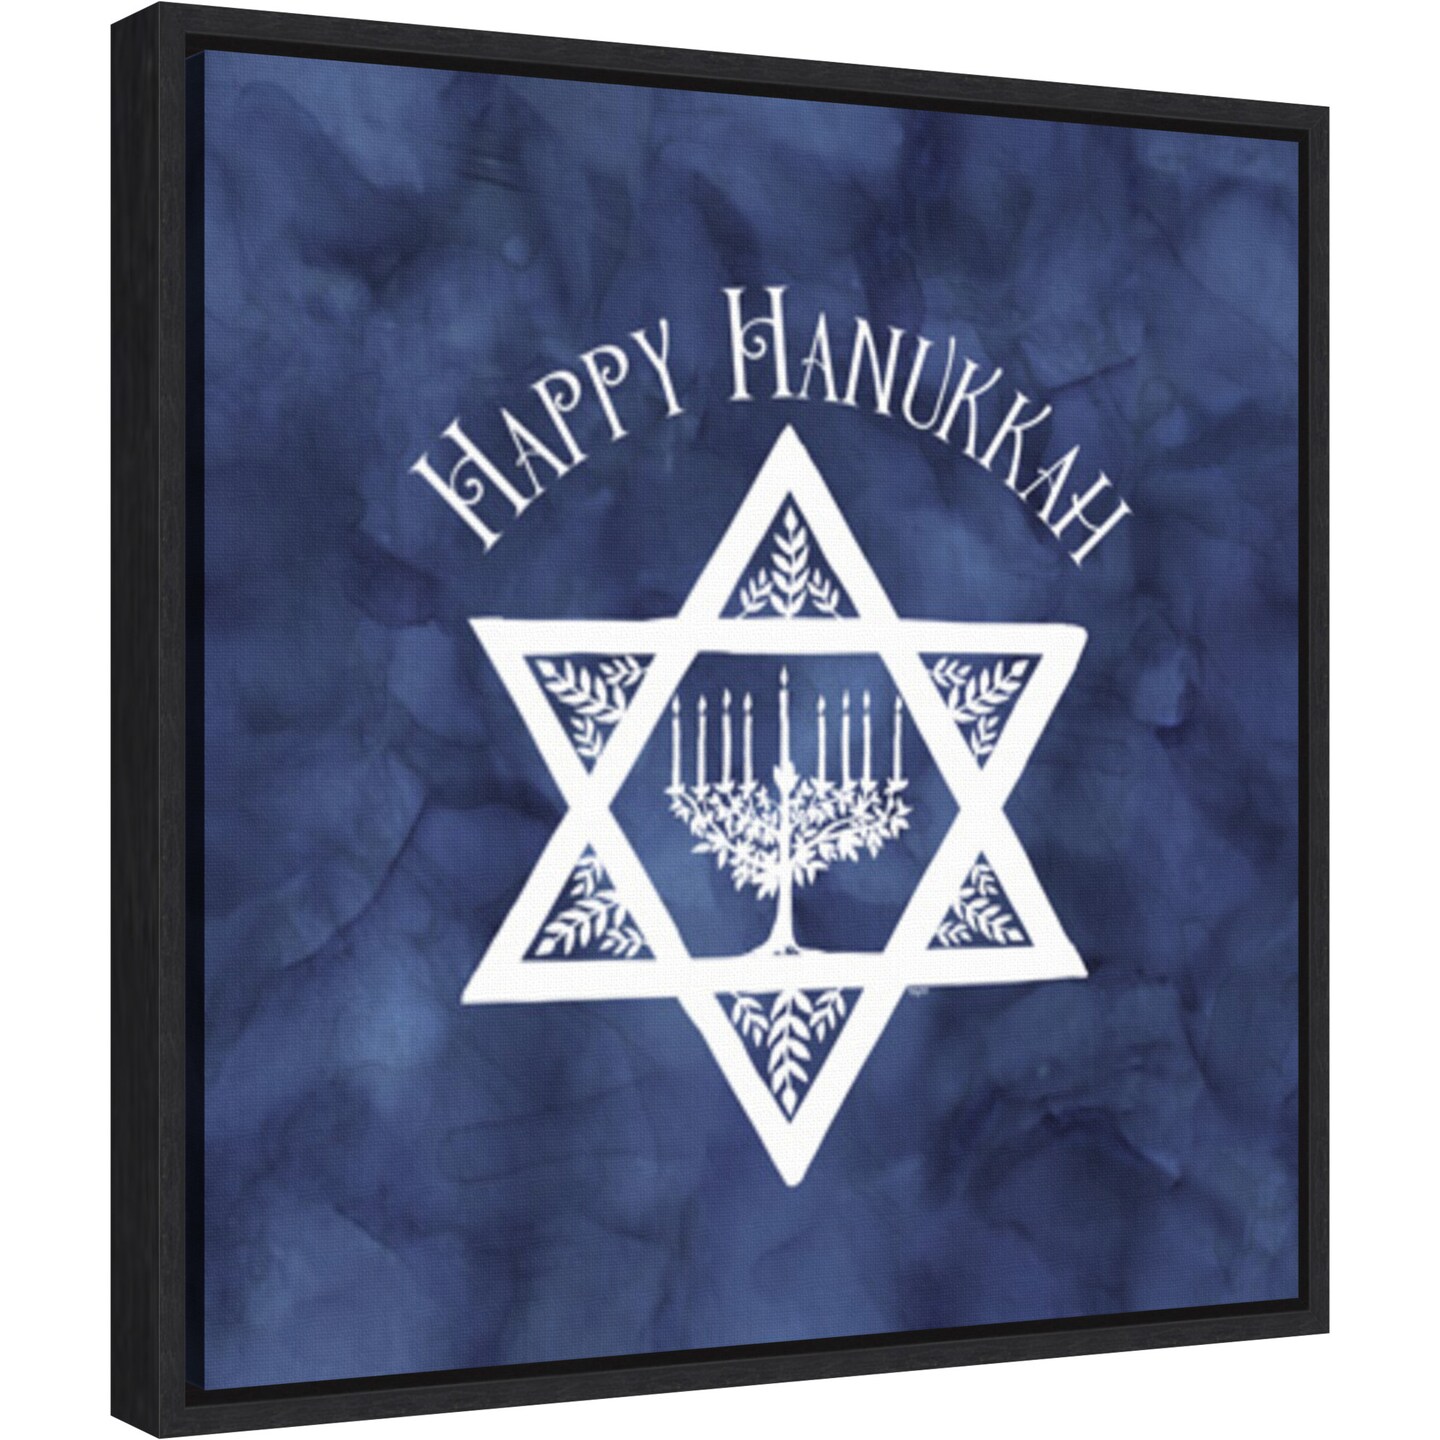 Festival of Lights blue III-Happy Hanukkah by Tara Reed 16-in. W x 16-in. H. Canvas Wall Art Print Framed in Black